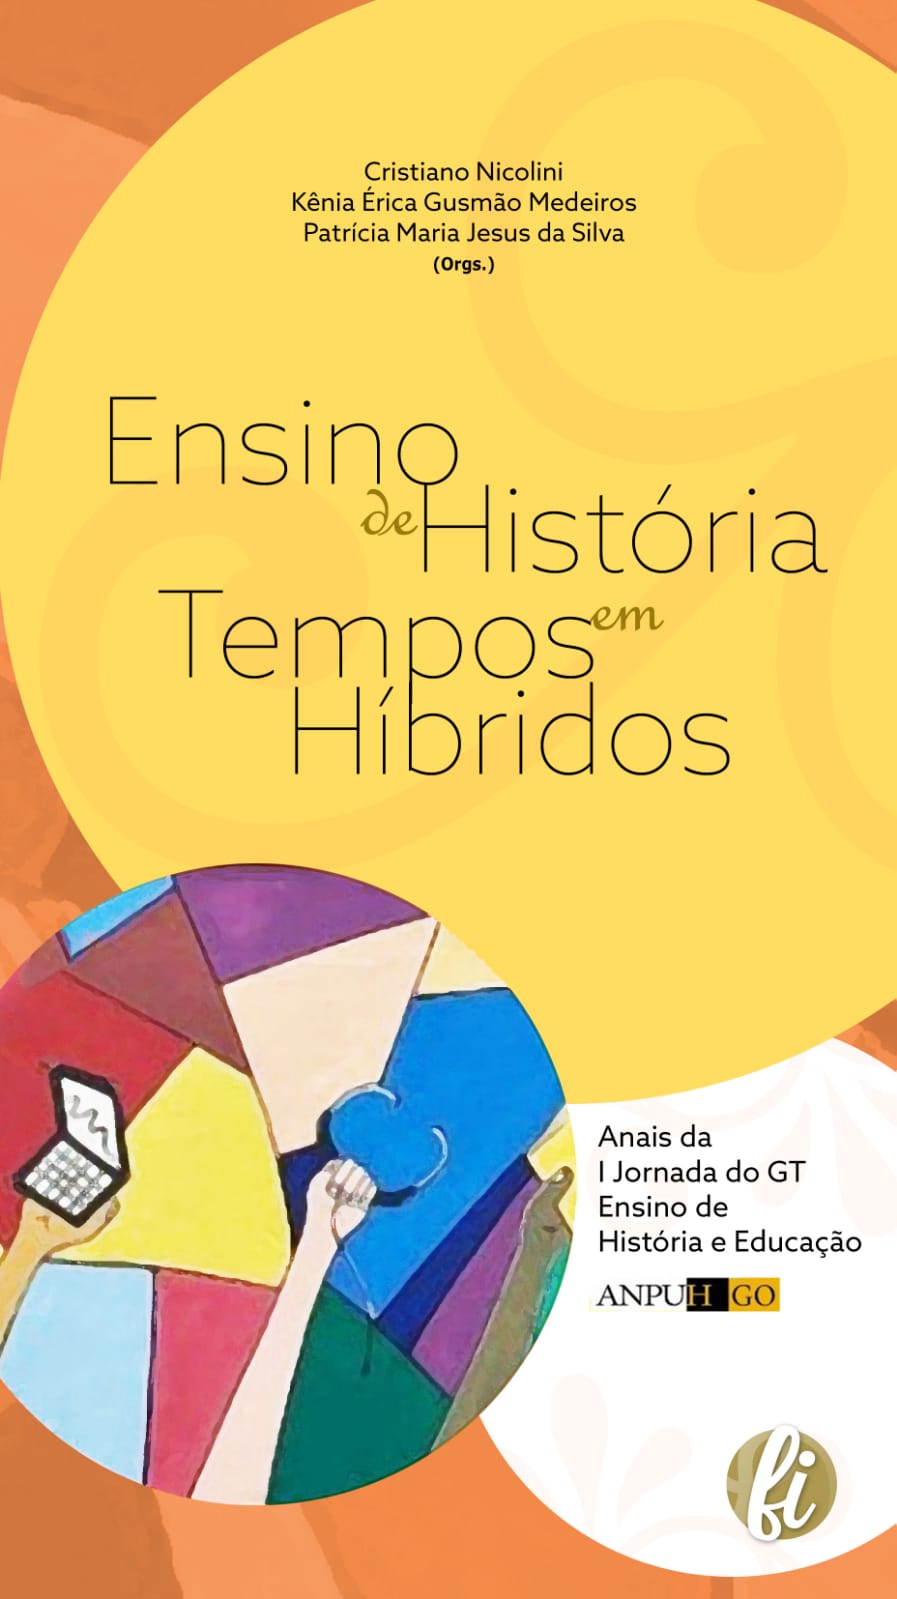 					Afficher I Jornada DO GT Ensino de História e Educação ANPUH GO: ensino de história em tempos híbridos
				